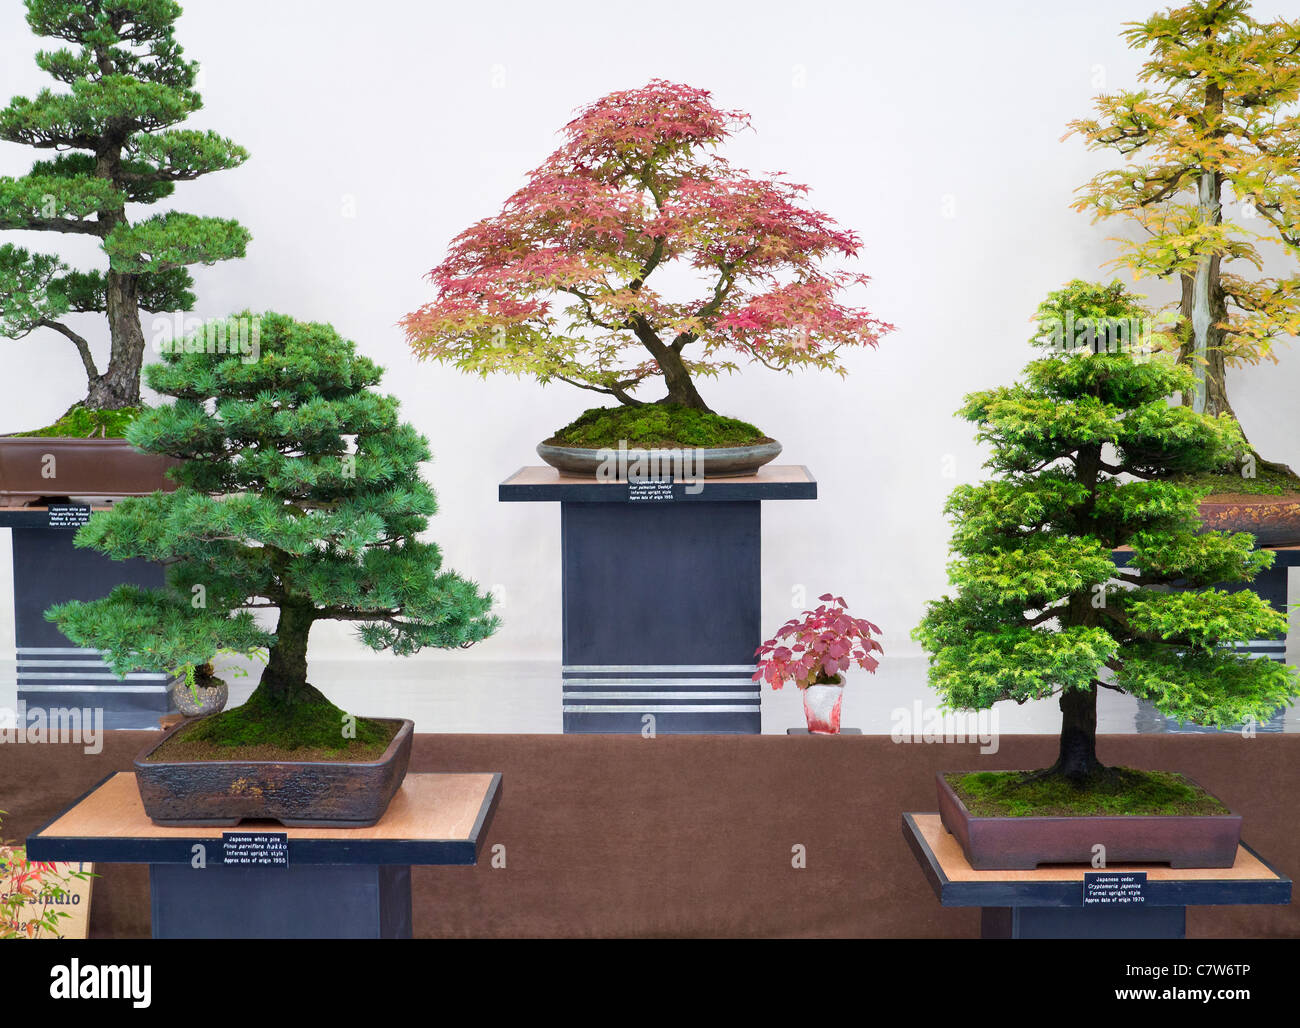 Malvern Autumn Show, England- superb bonsai display Stock Photo